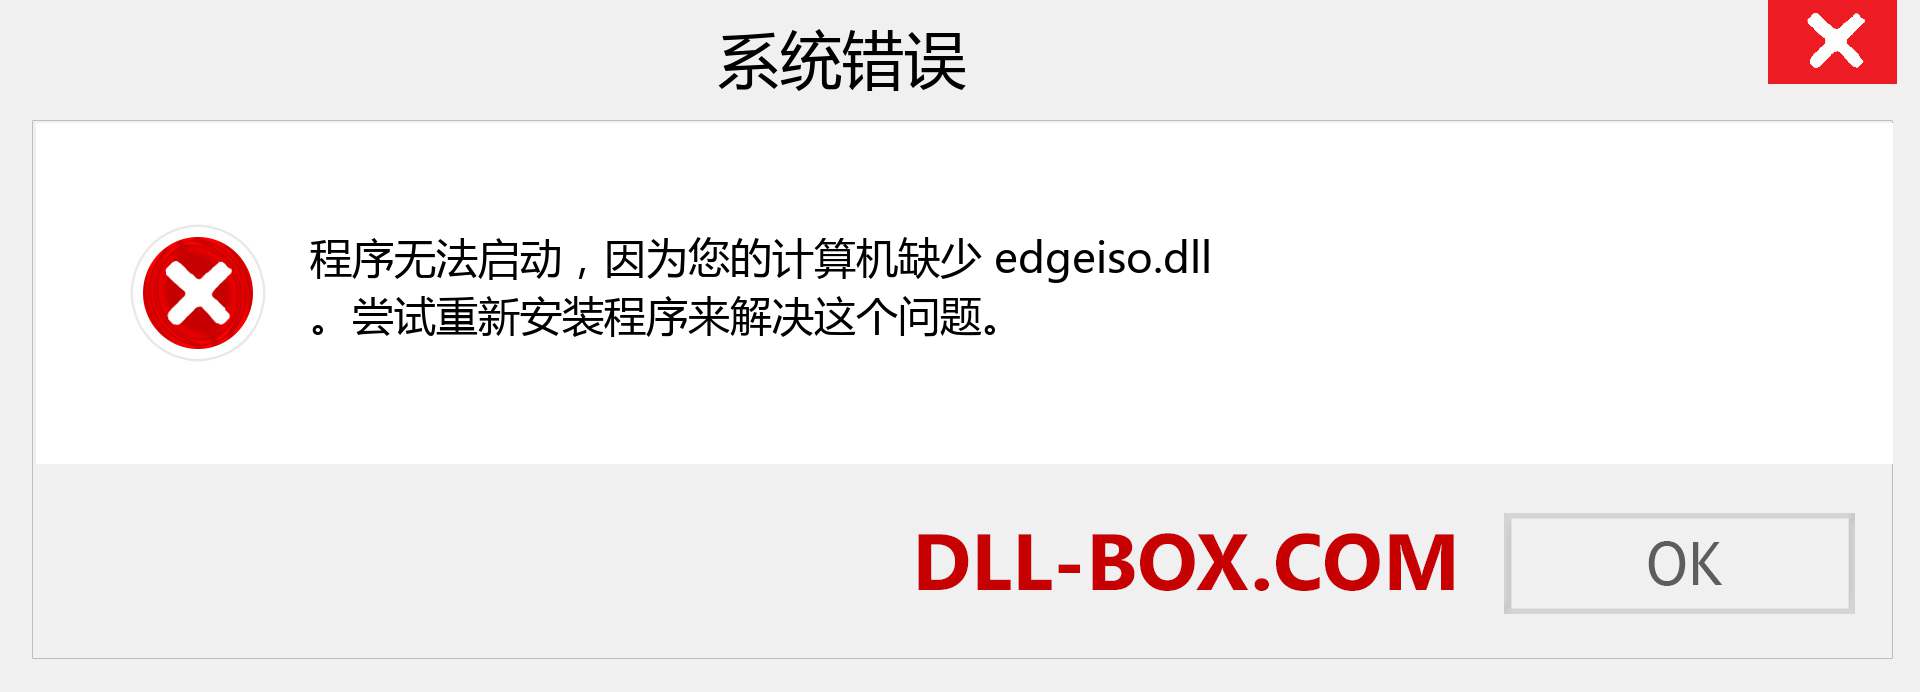 edgeiso.dll 文件丢失？。 适用于 Windows 7、8、10 的下载 - 修复 Windows、照片、图像上的 edgeiso dll 丢失错误